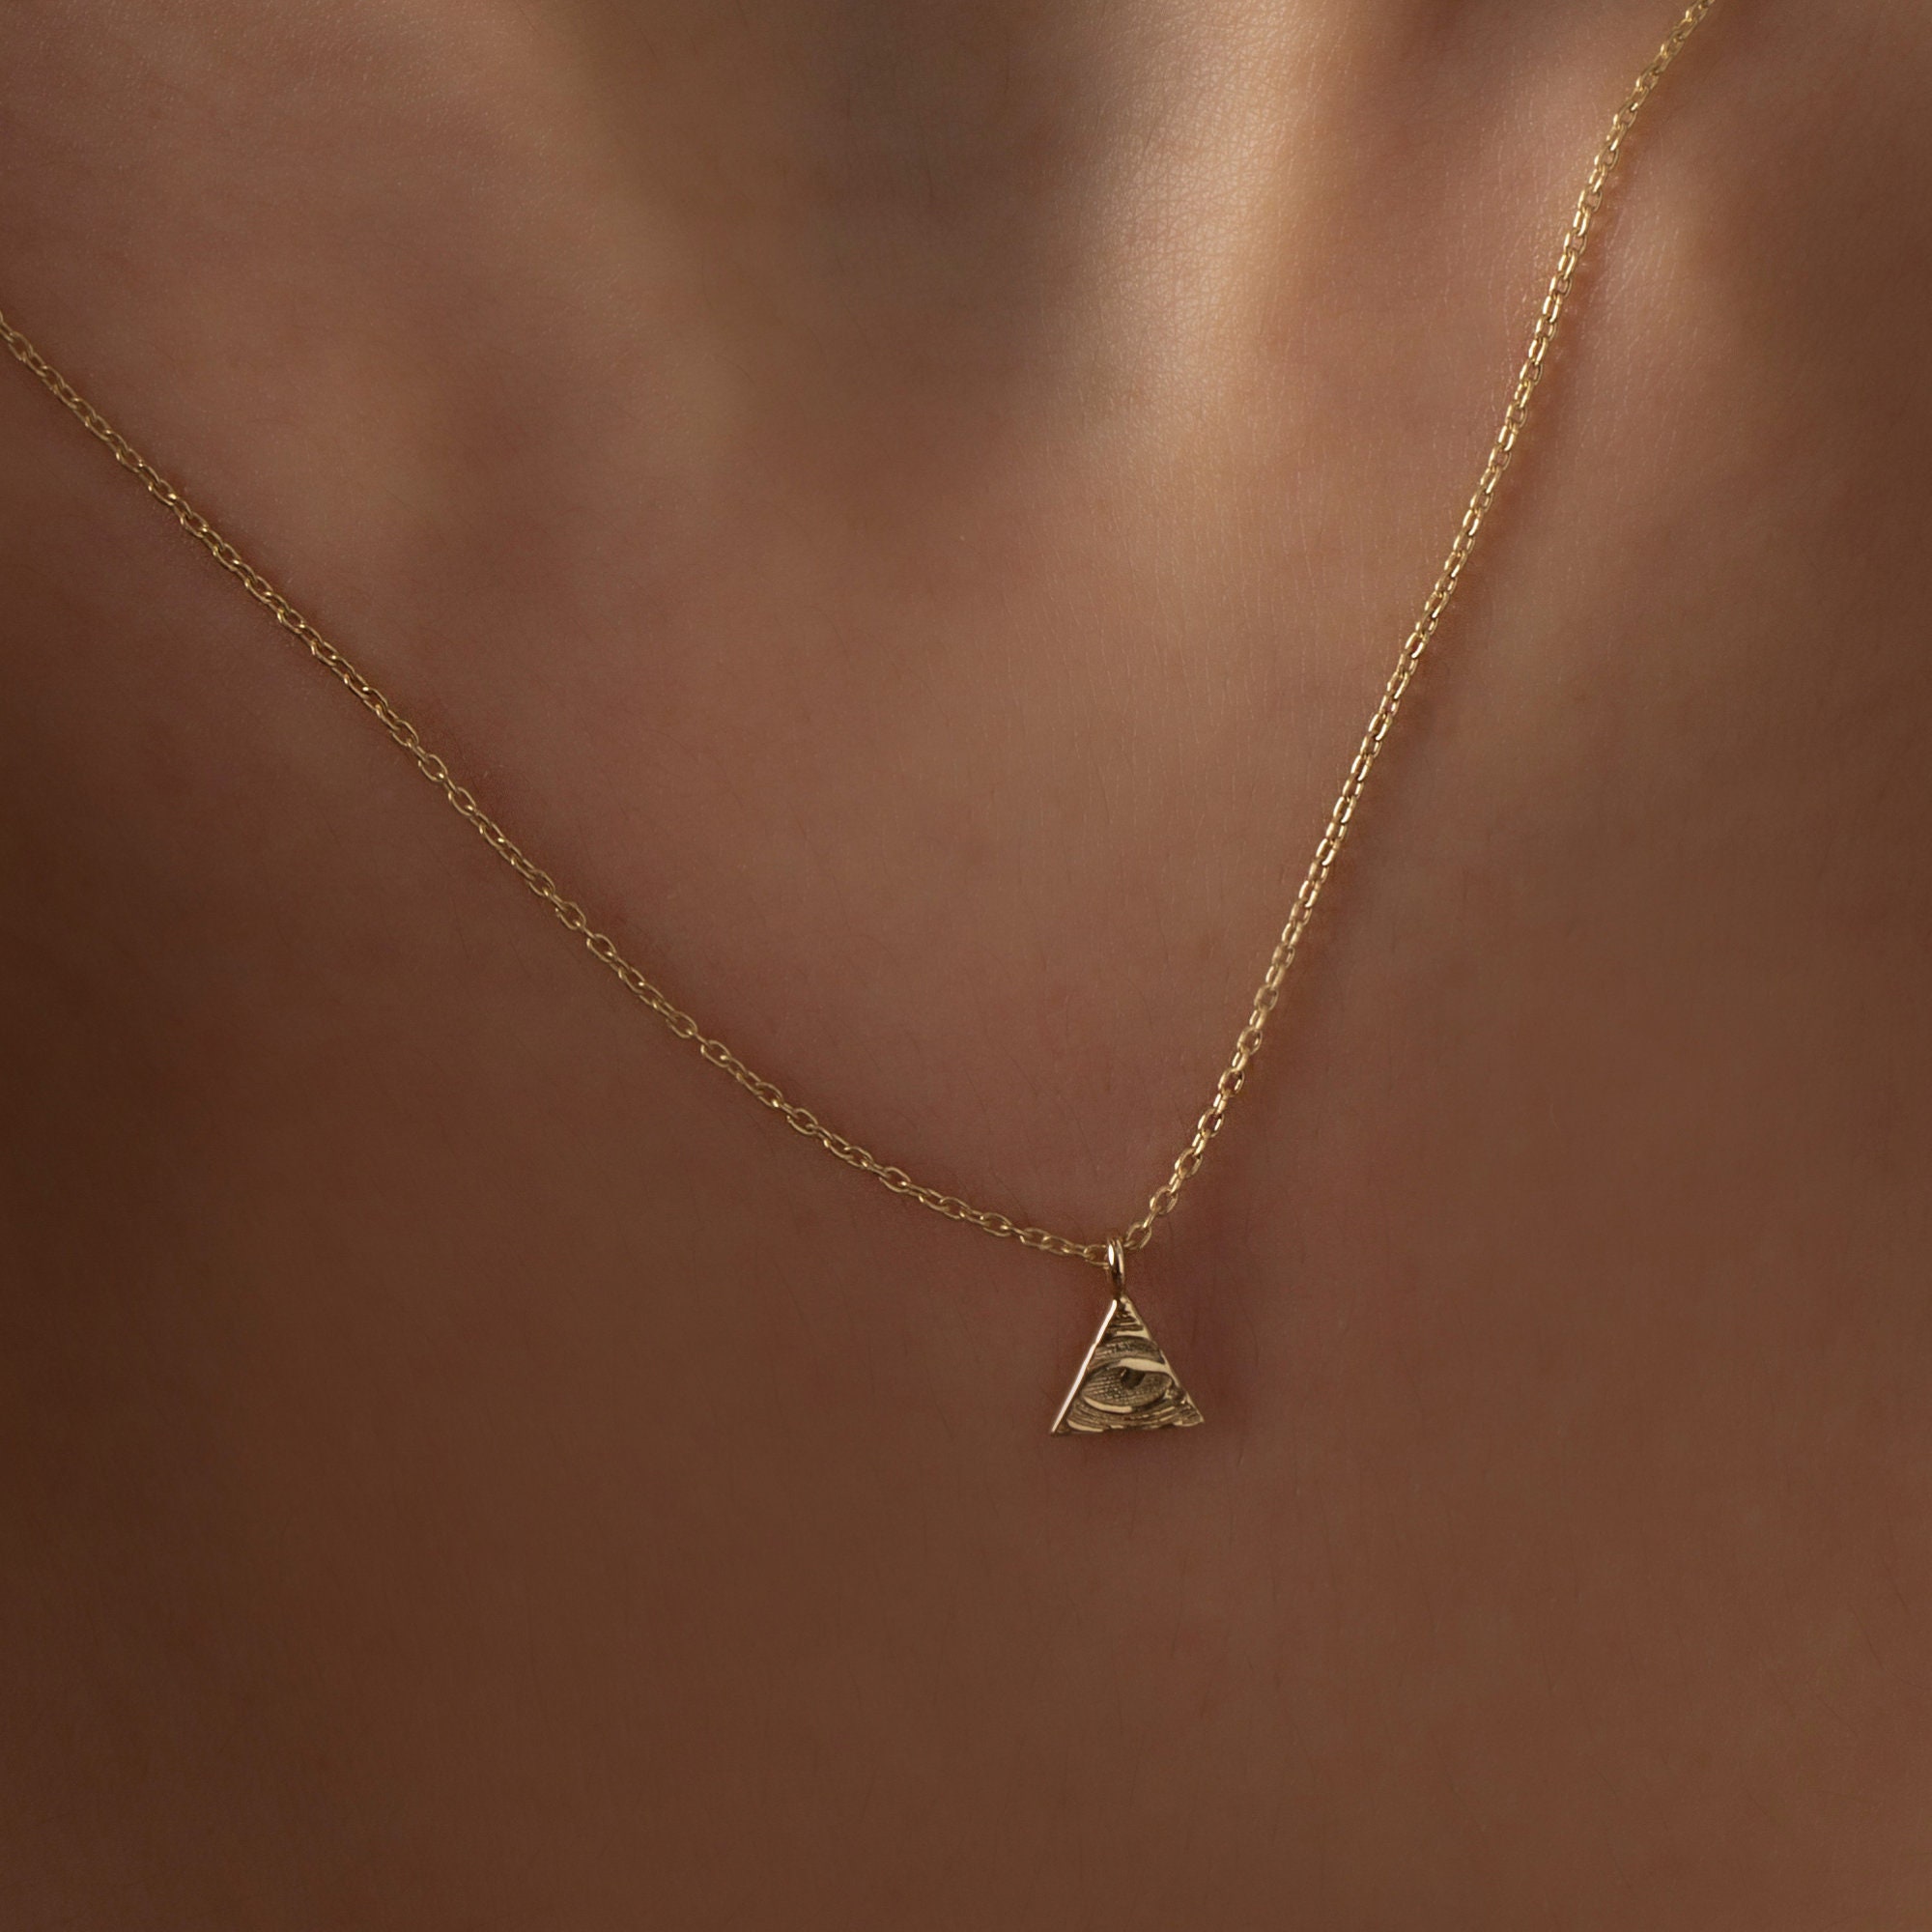 Kaufe Herren-Halskette mit Anhänger aus Edelstahl, Illuminati, das  allsehende Auge der Vorsehung, Gottesauge-Anhänger-Halskette